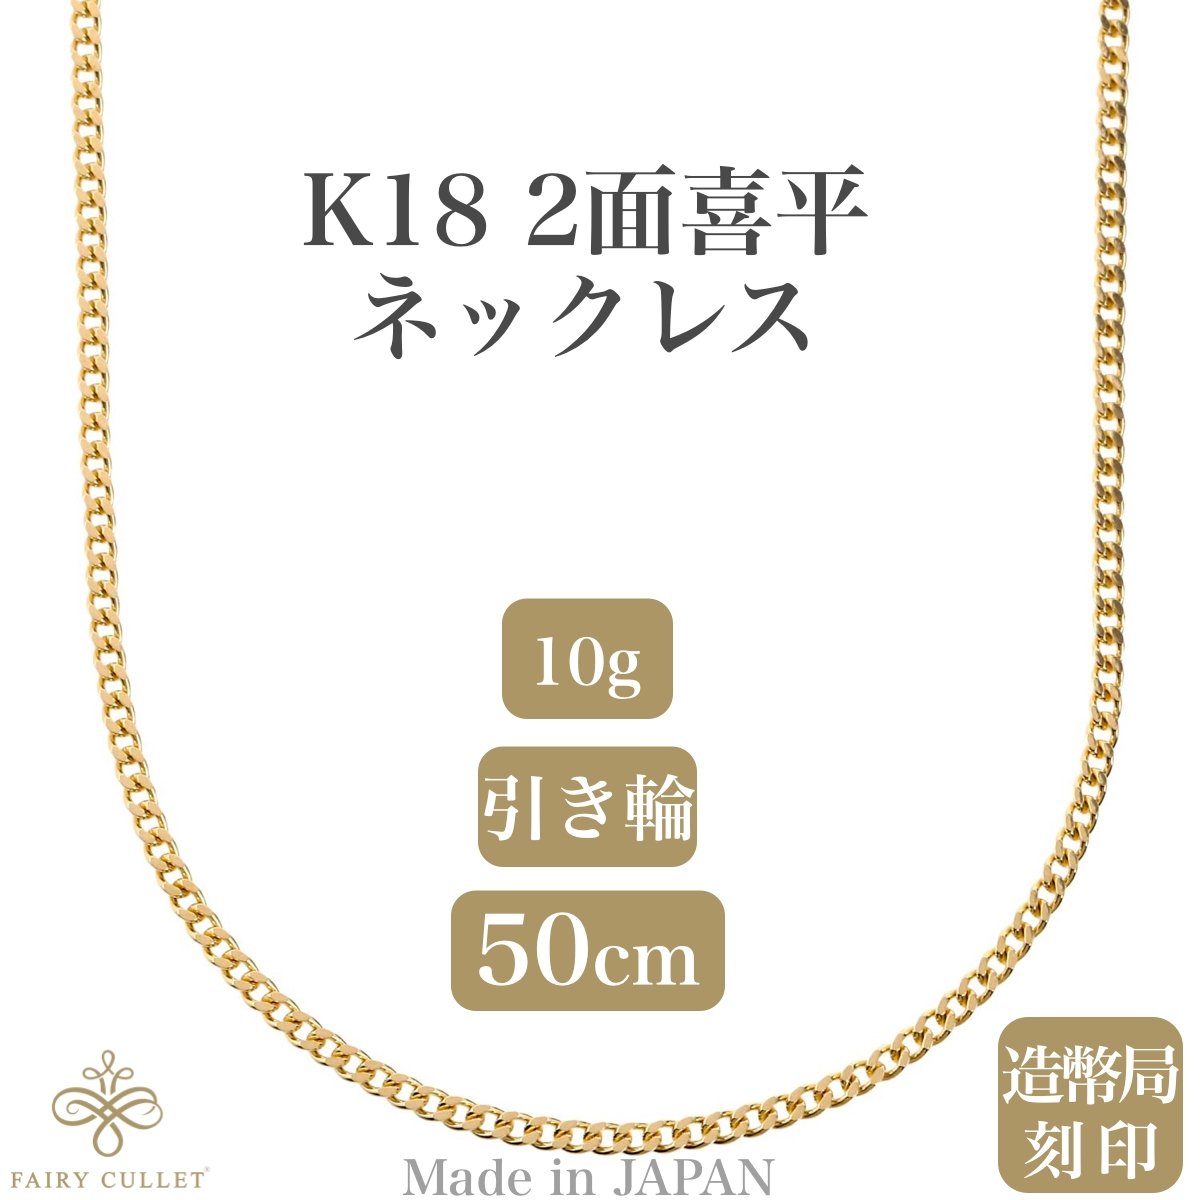 18金ネックレス K18 2面喜平チェーン 日本製 検定印 10g 50cm 引き輪